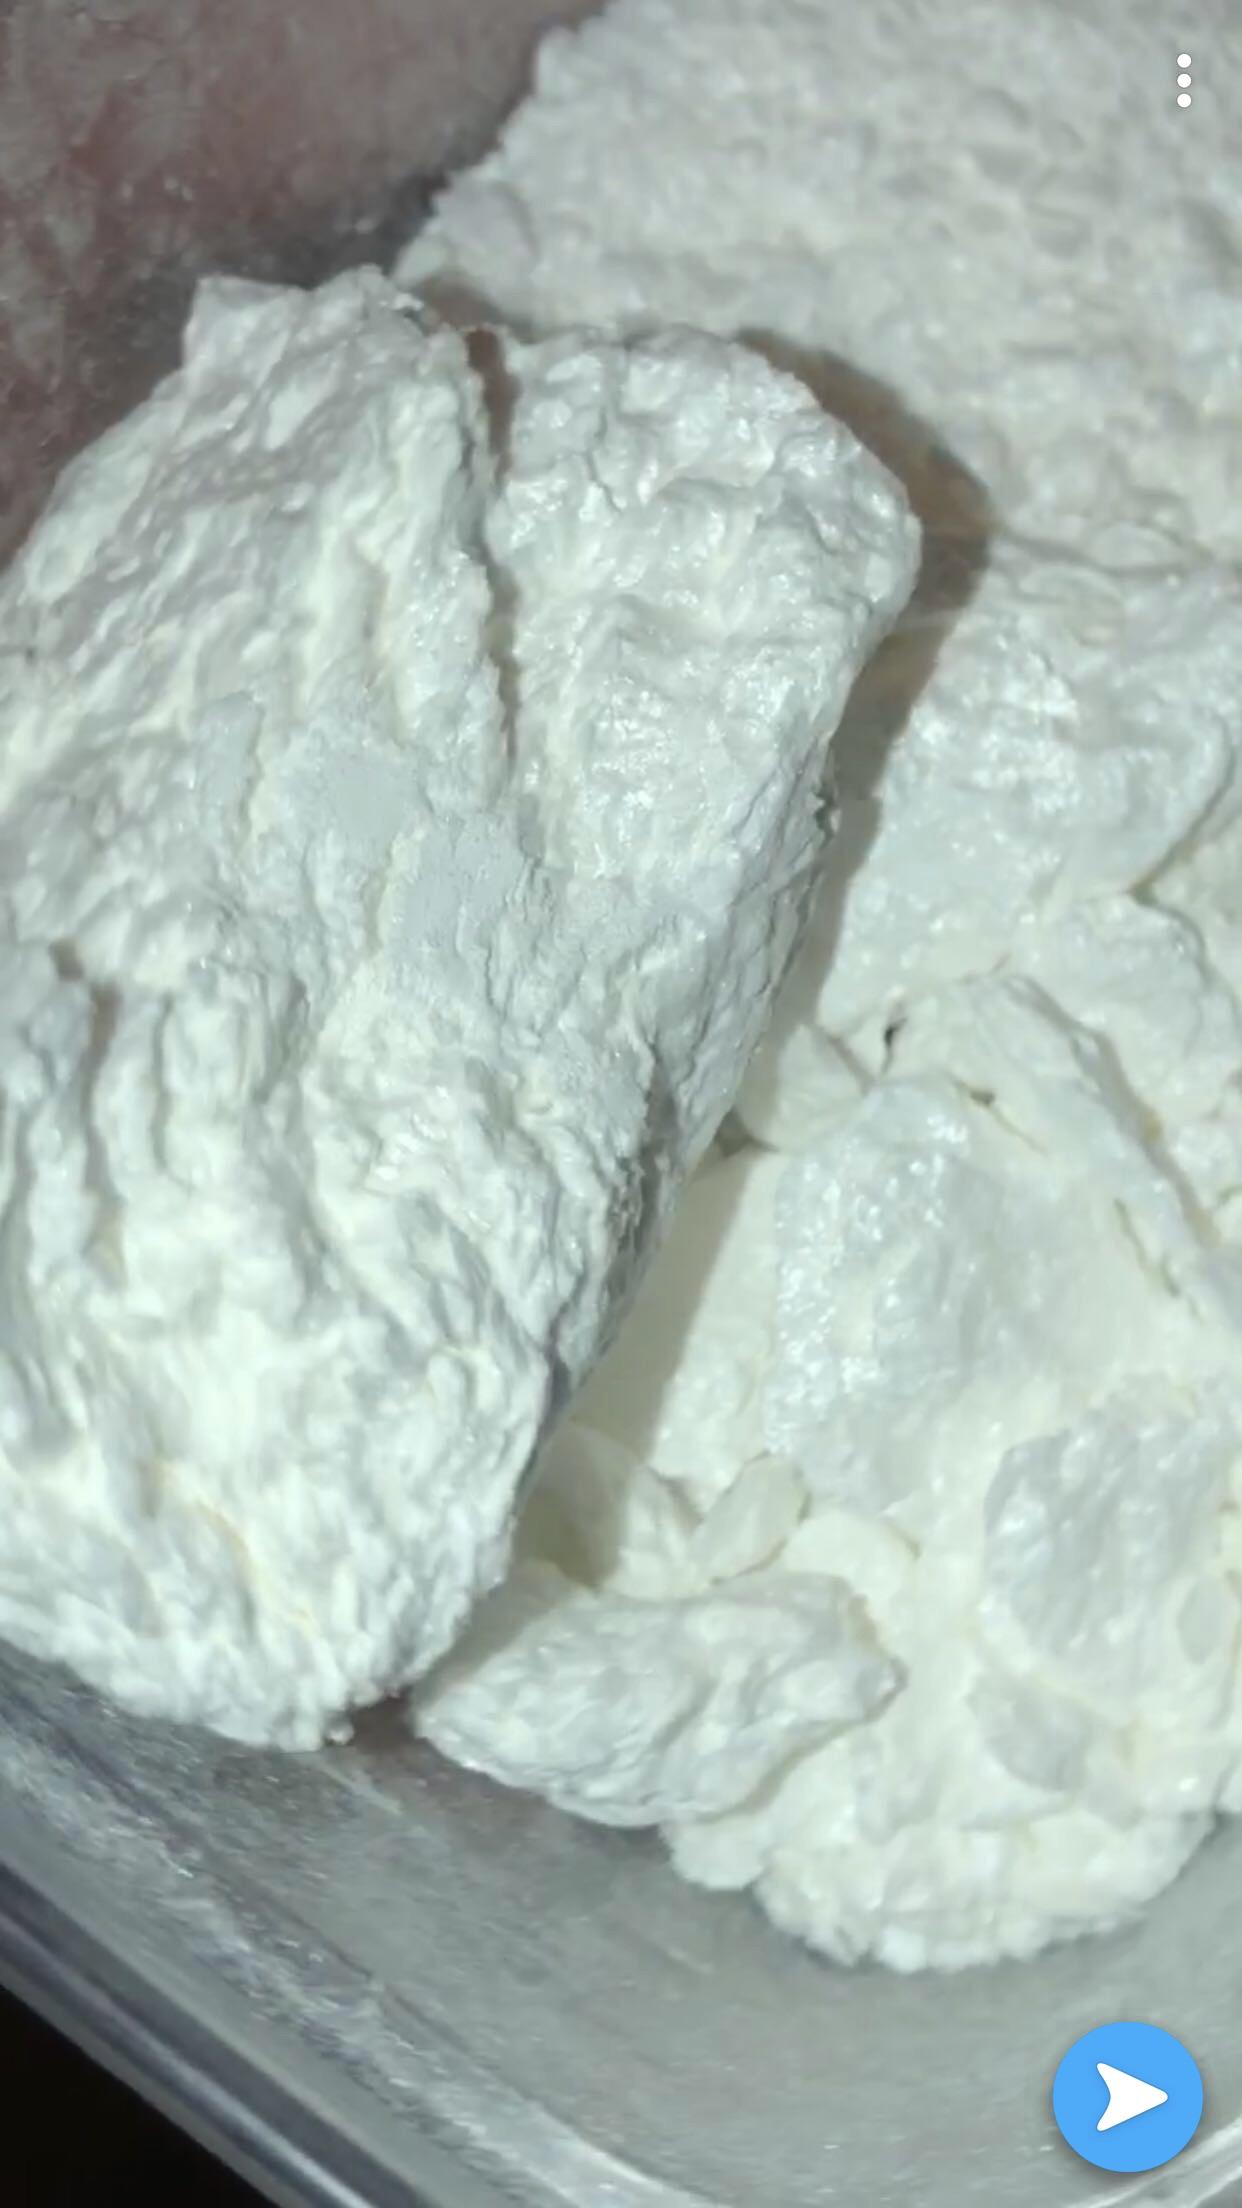 Bolivian cocaine powder